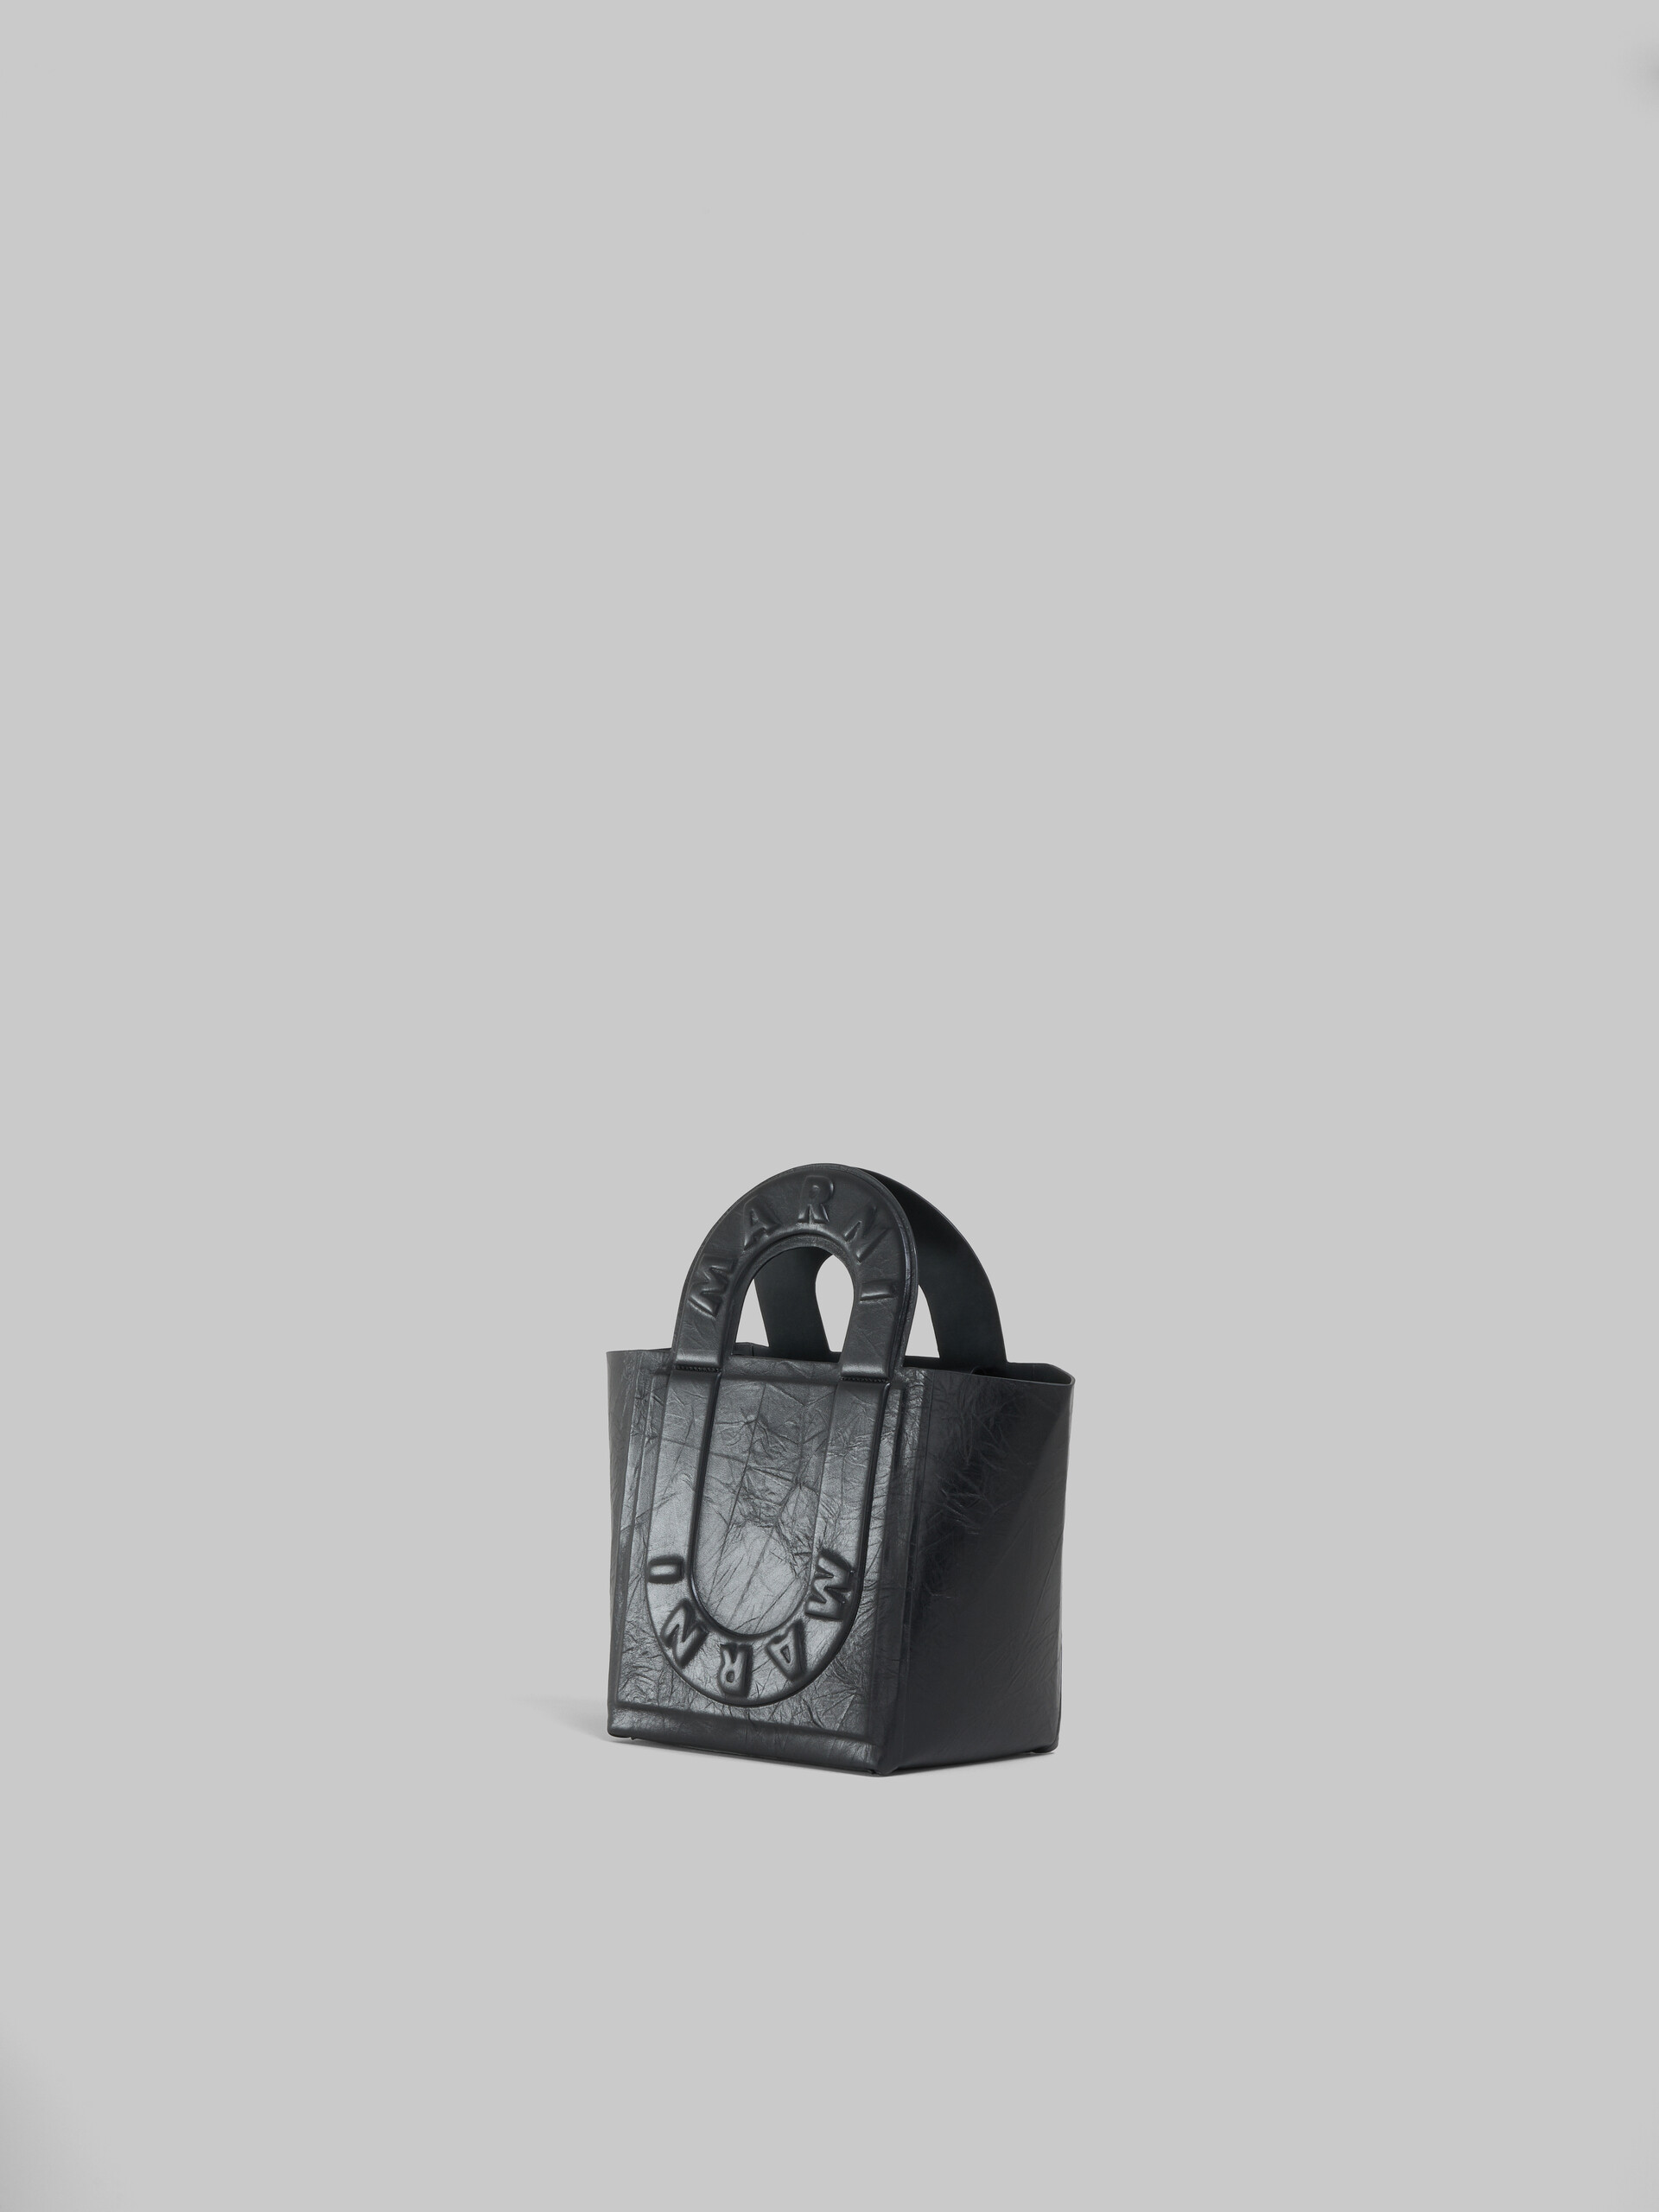 ターコイズ レザー製 Sweedy スモール トートバッグ - ショッピングバッグ - Image 2